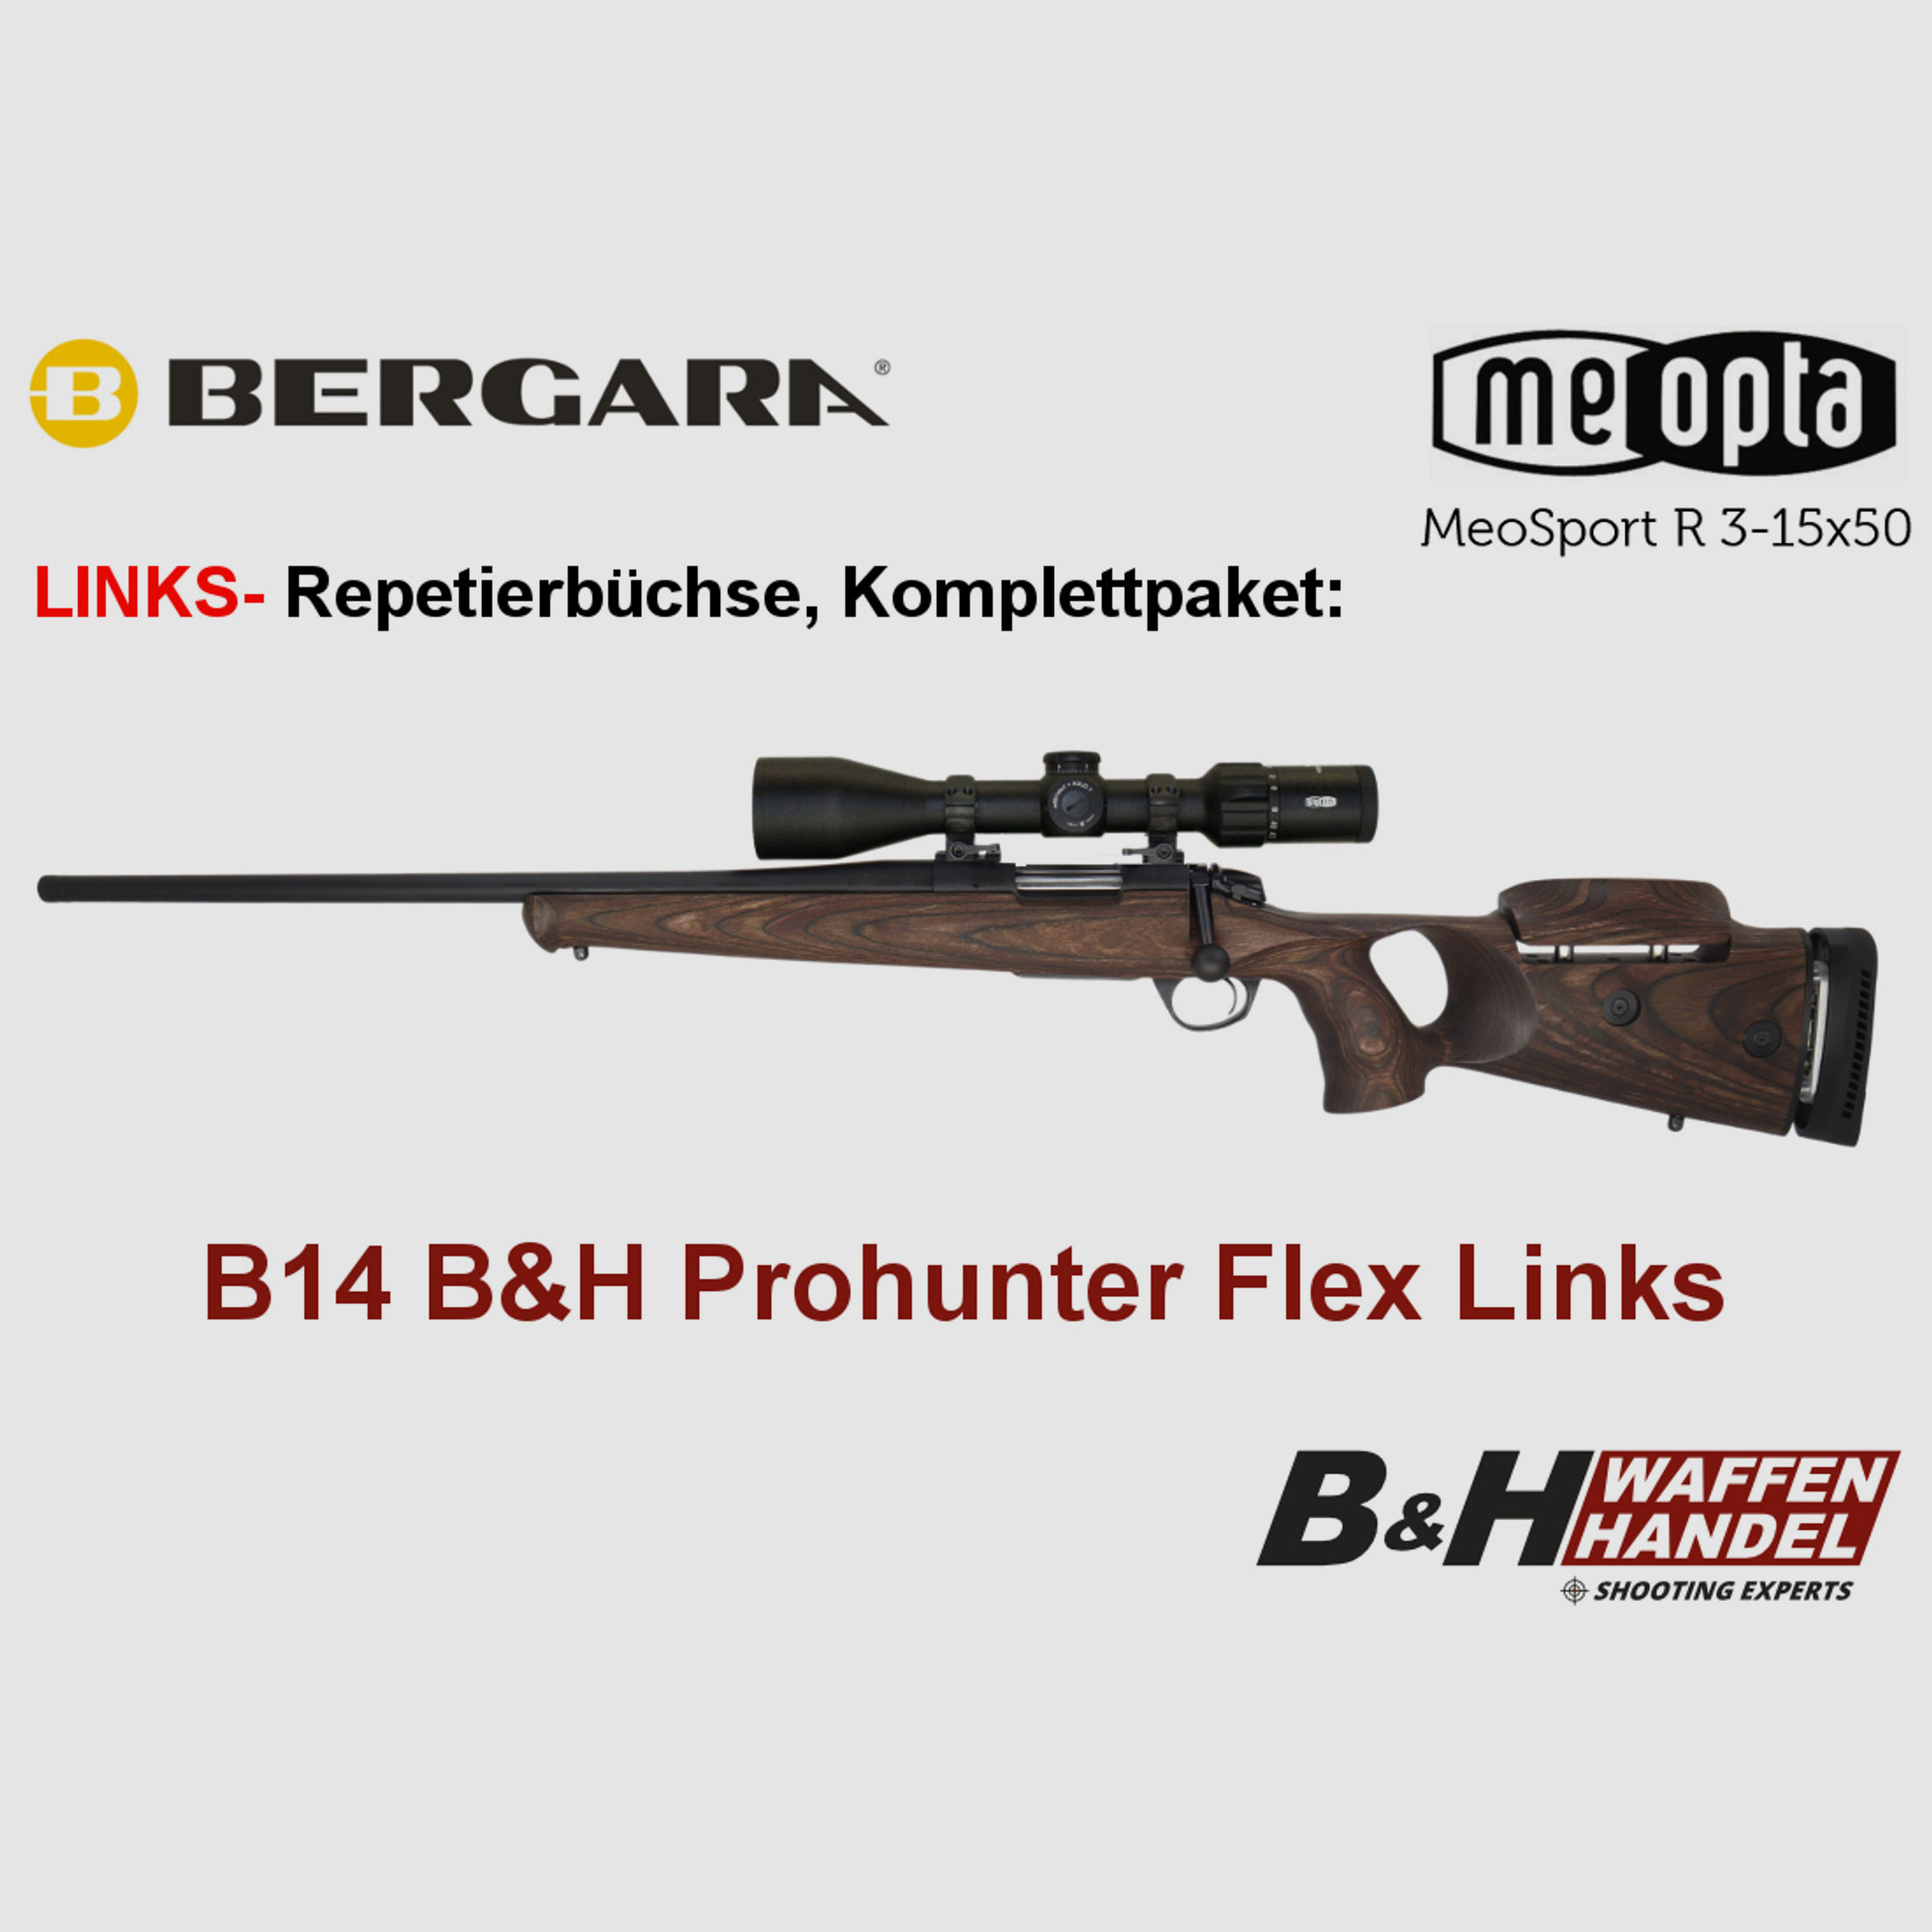  Bergara   B14 B&H Prohunter Flex LINKS Lochschaft Meopta 3-15x50 fertig montiert / Optional: Brenner Schalldämpfer